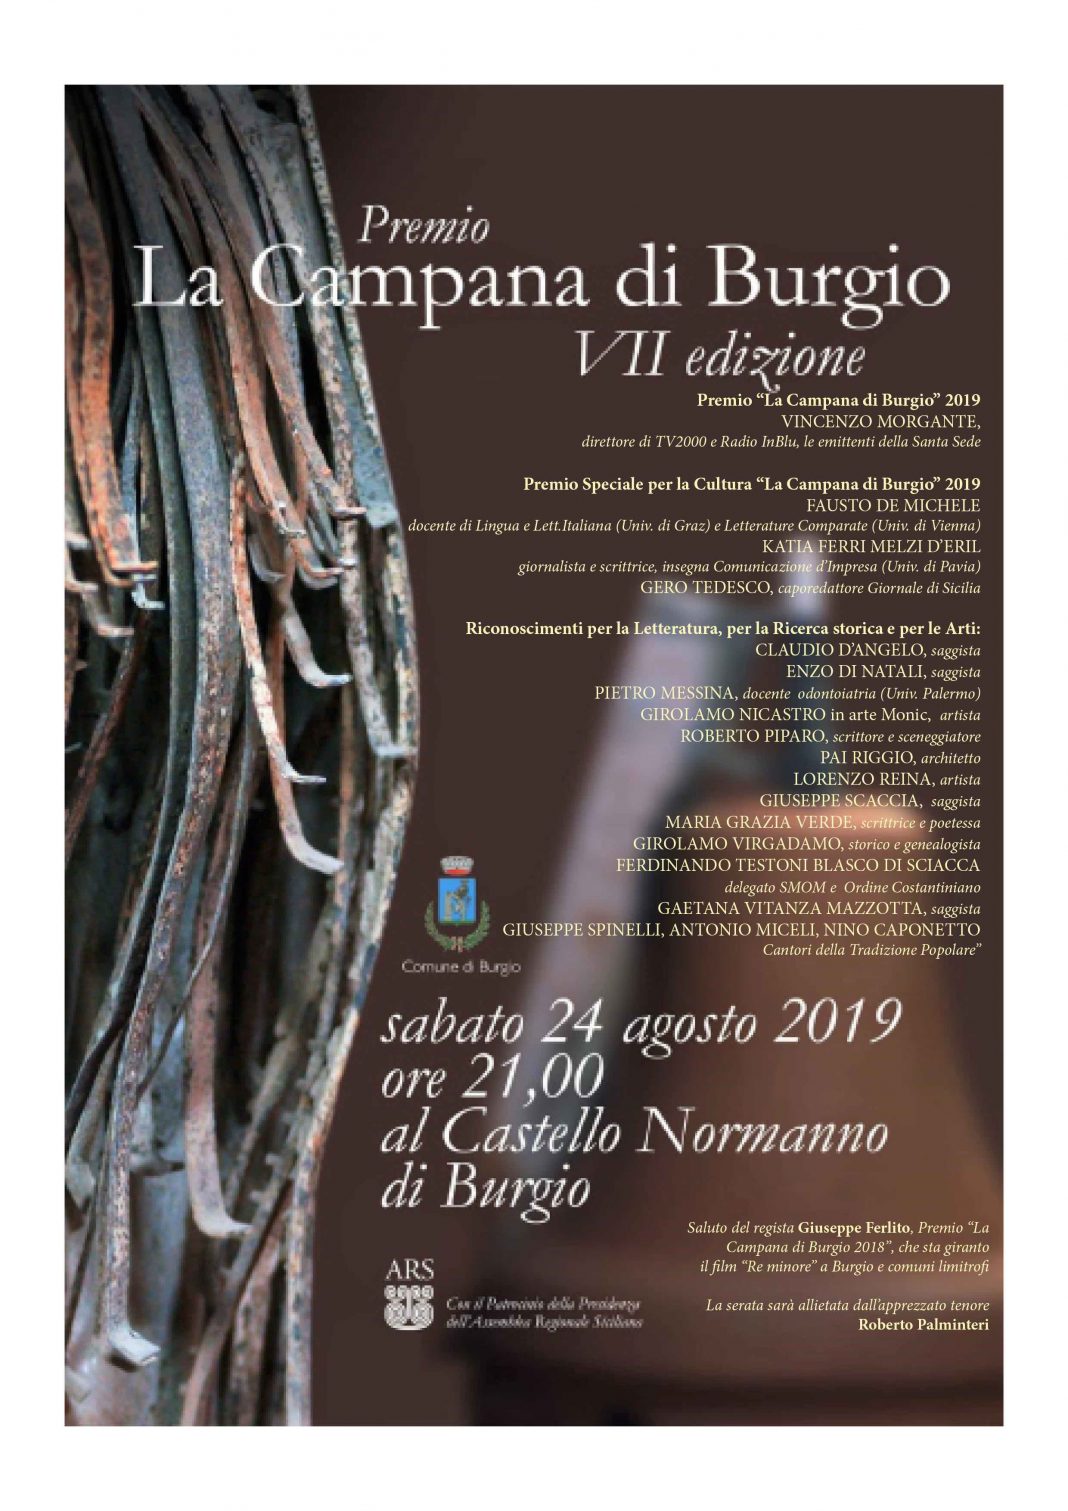 Premio La Campana di Burgio 2019 VII edizionehttps://www.exibart.com/repository/media/formidable/11/burgio-piccolo-1068x1511.jpg